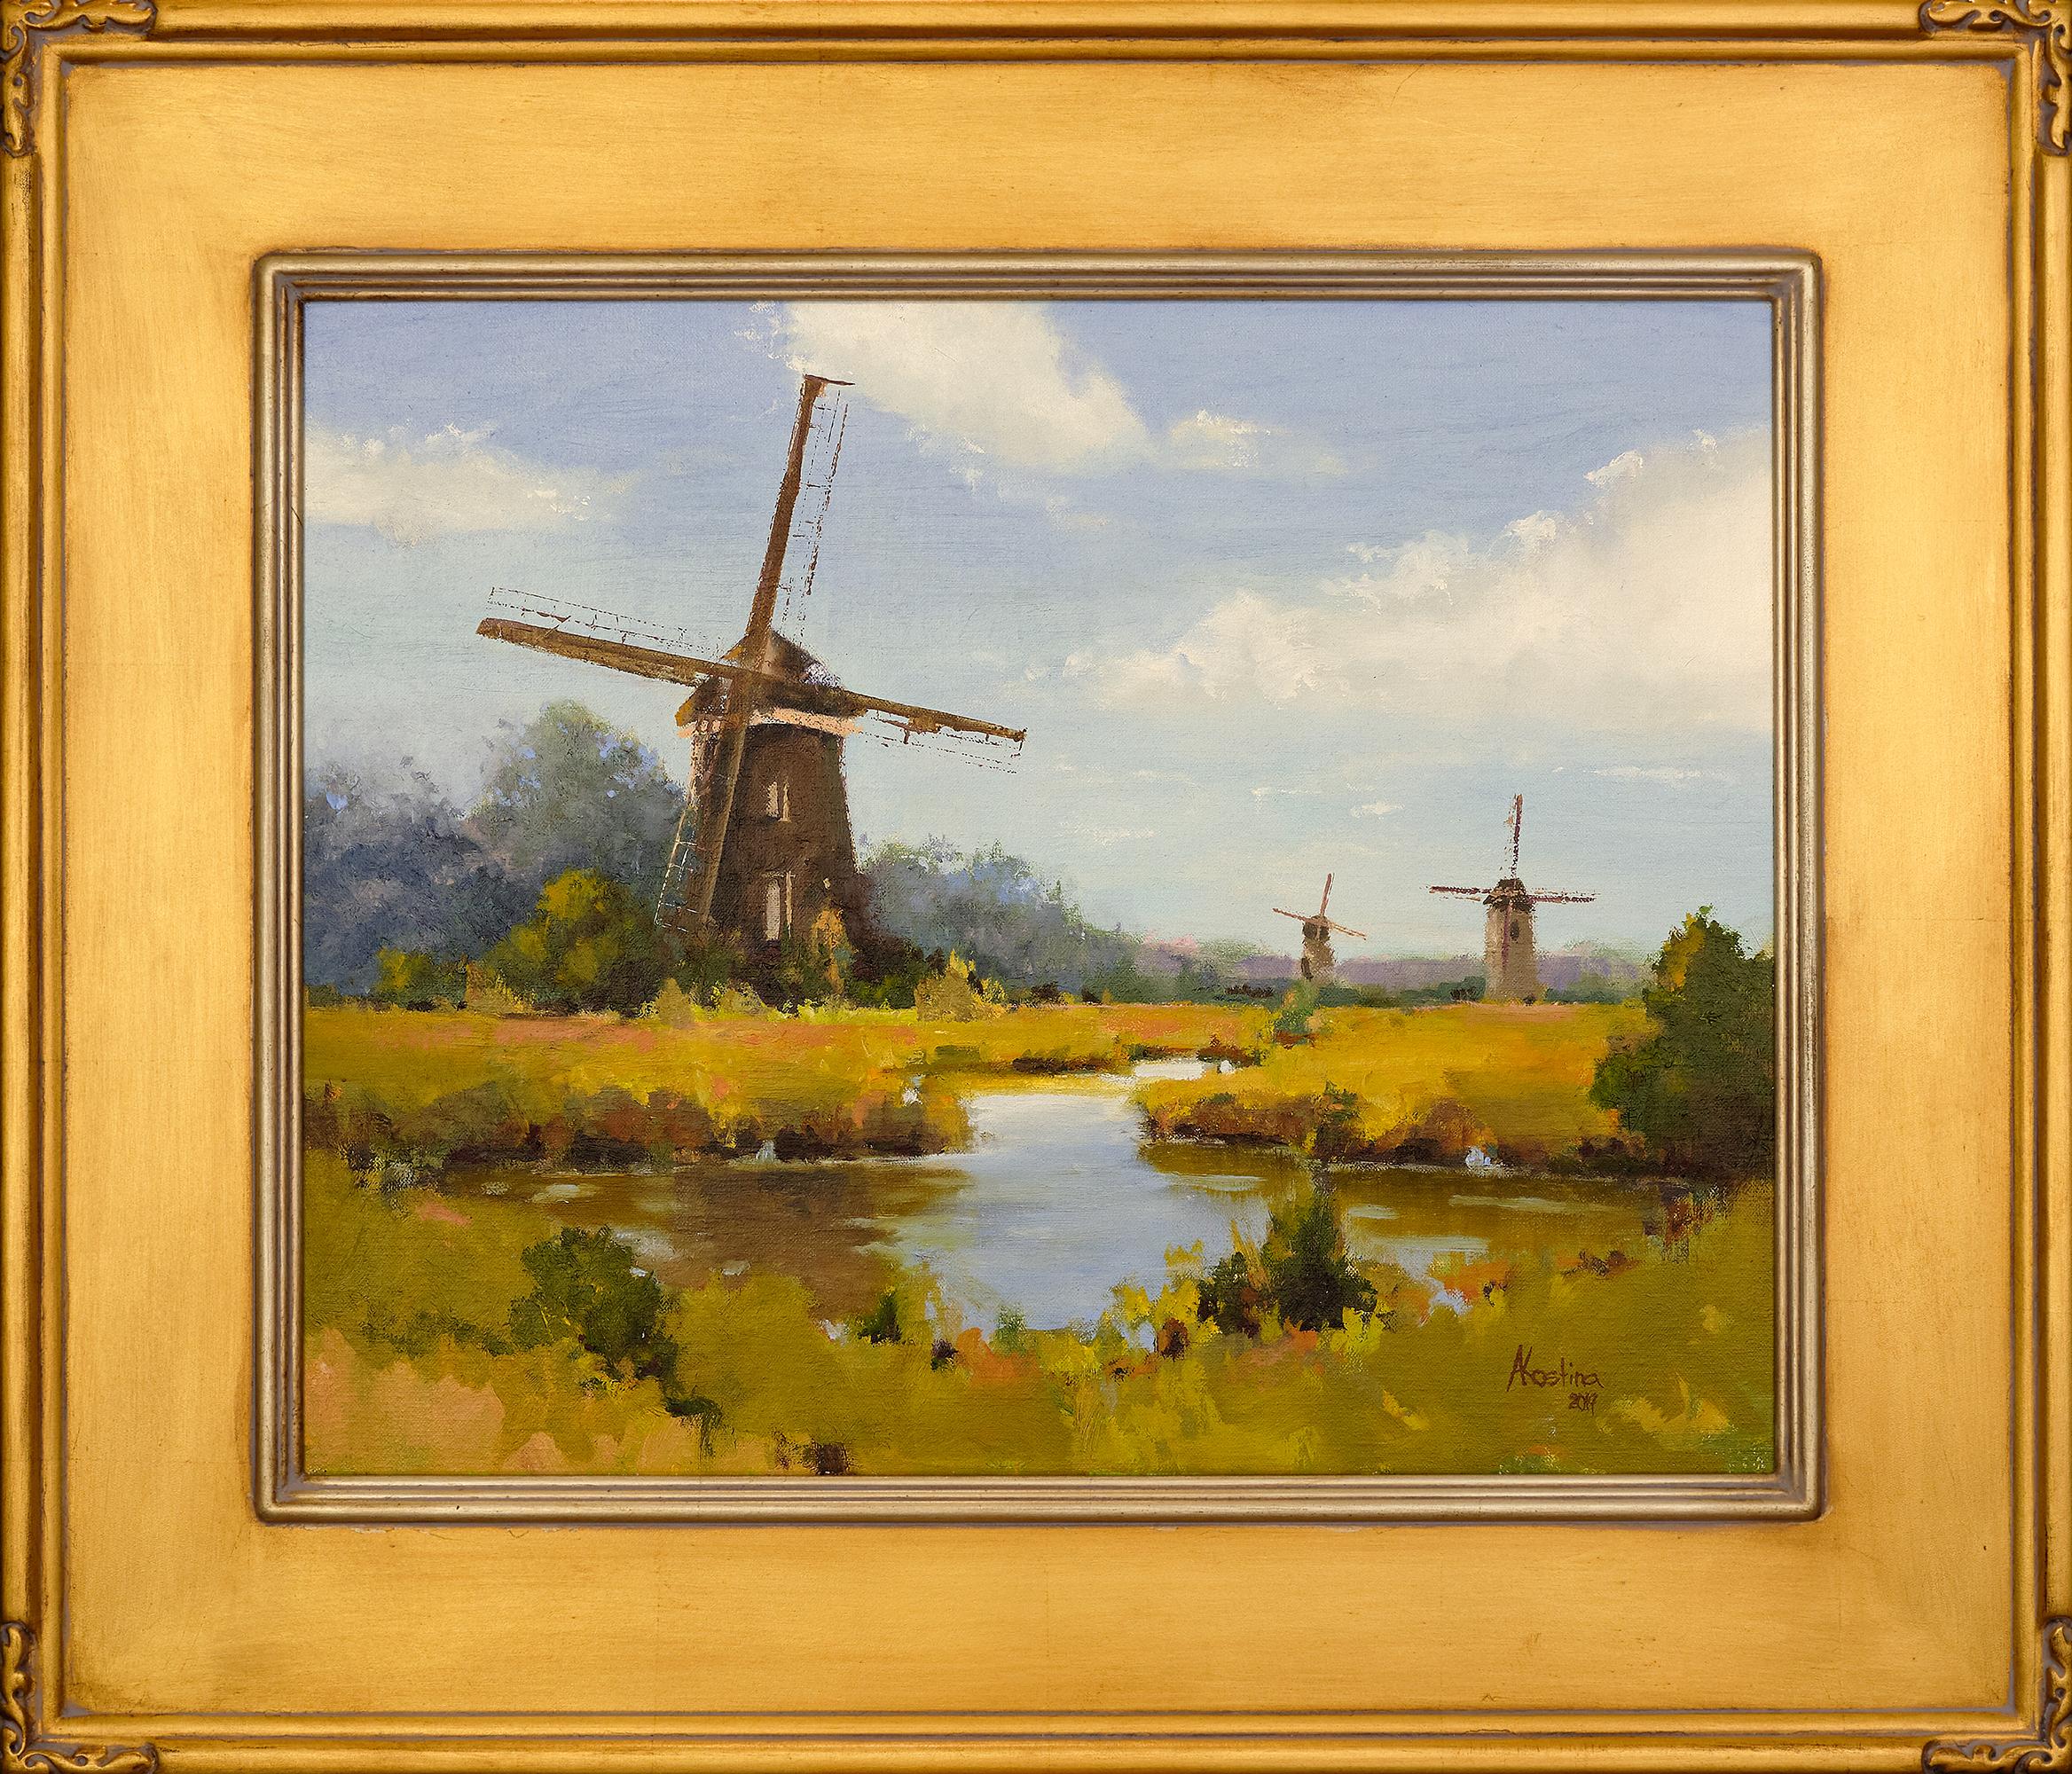 Cette peinture chaleureuse et réaliste représentant une journée d'exploration de la campagne hollandaise présente un champ doré avec un ruisseau qui traverse le paysage et des moulins à vent qui parsèment le paysage.  Le ciel bleu tendre avec ses